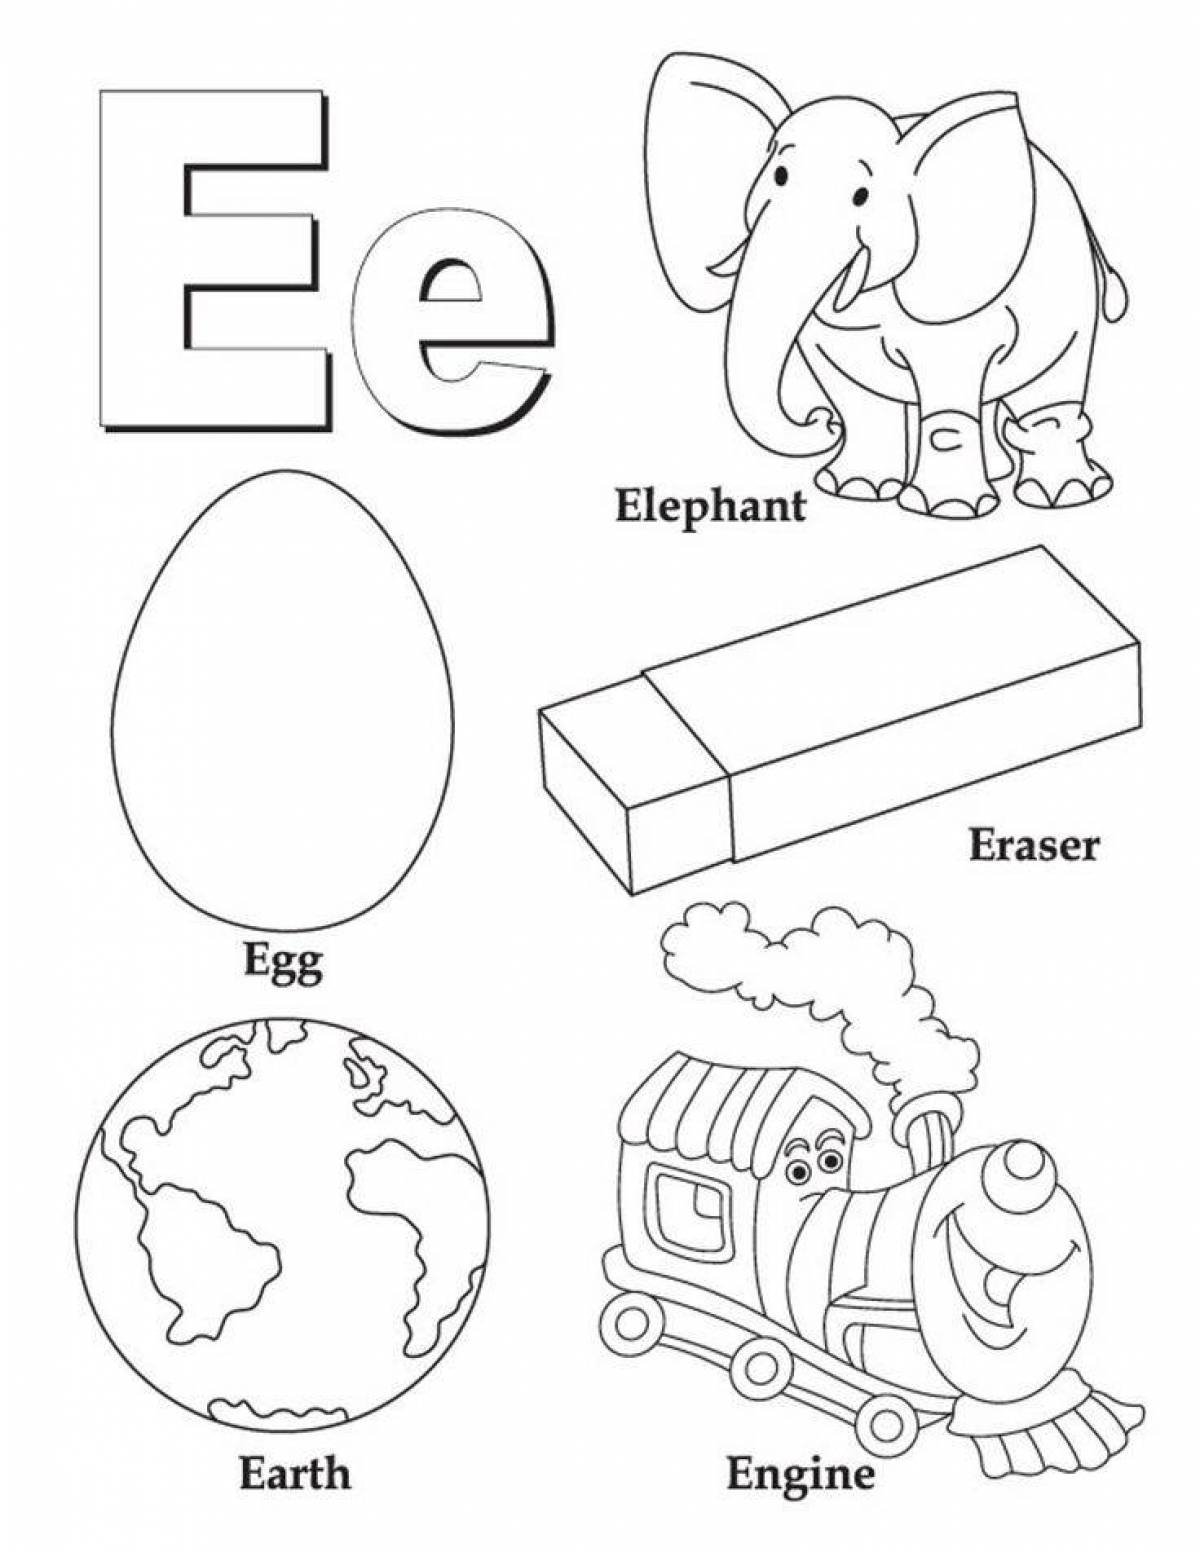 Увлекательная раскраска английского алфавита для детей